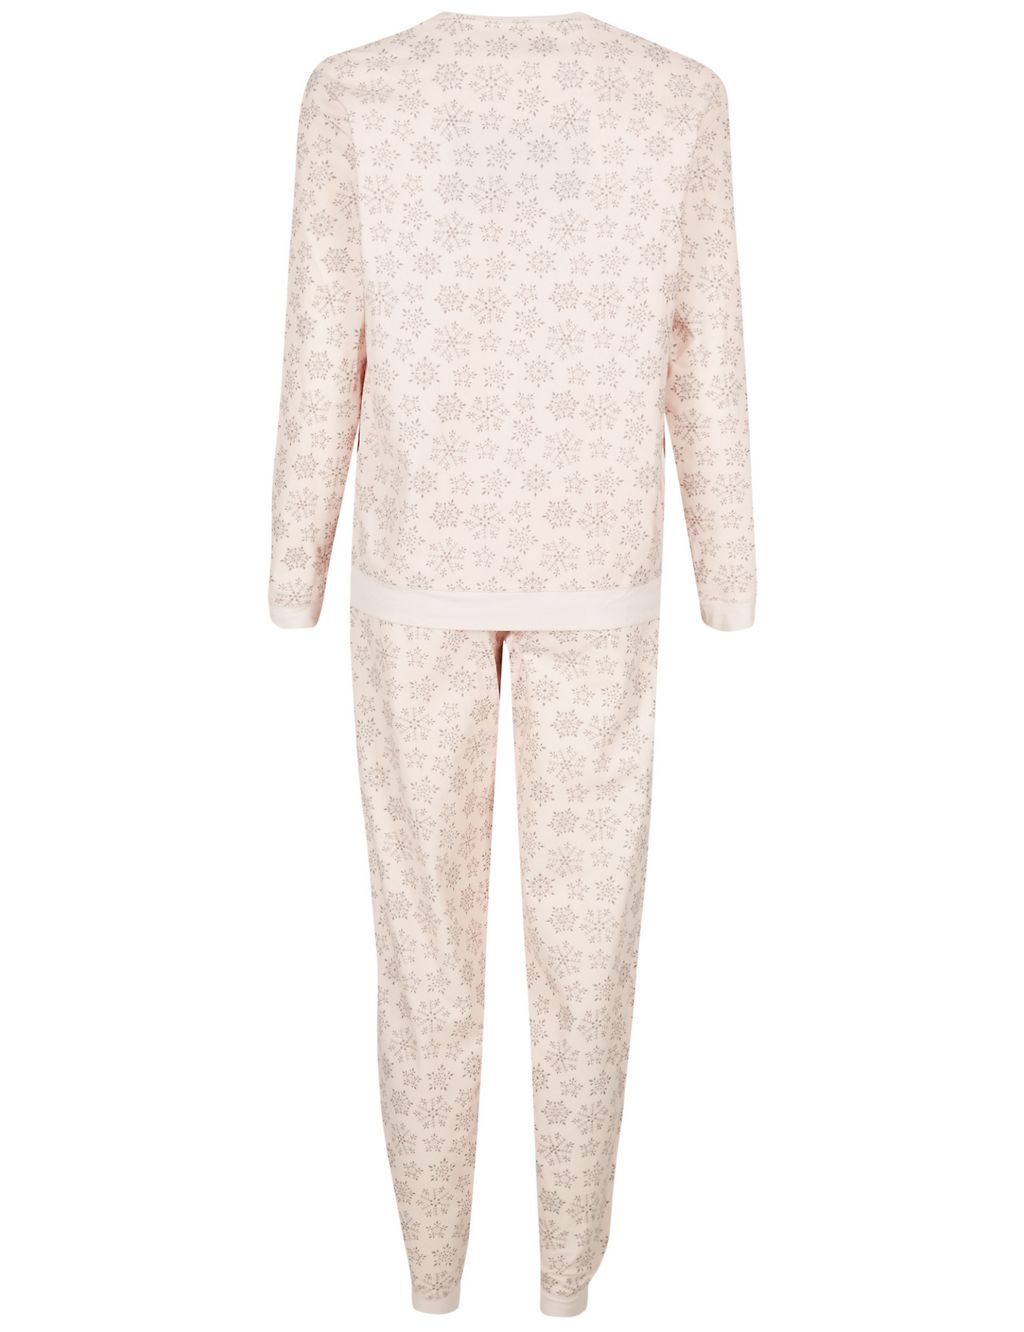 All Over Snowflake Print Long Sleeve Pyjamas 5 of 7